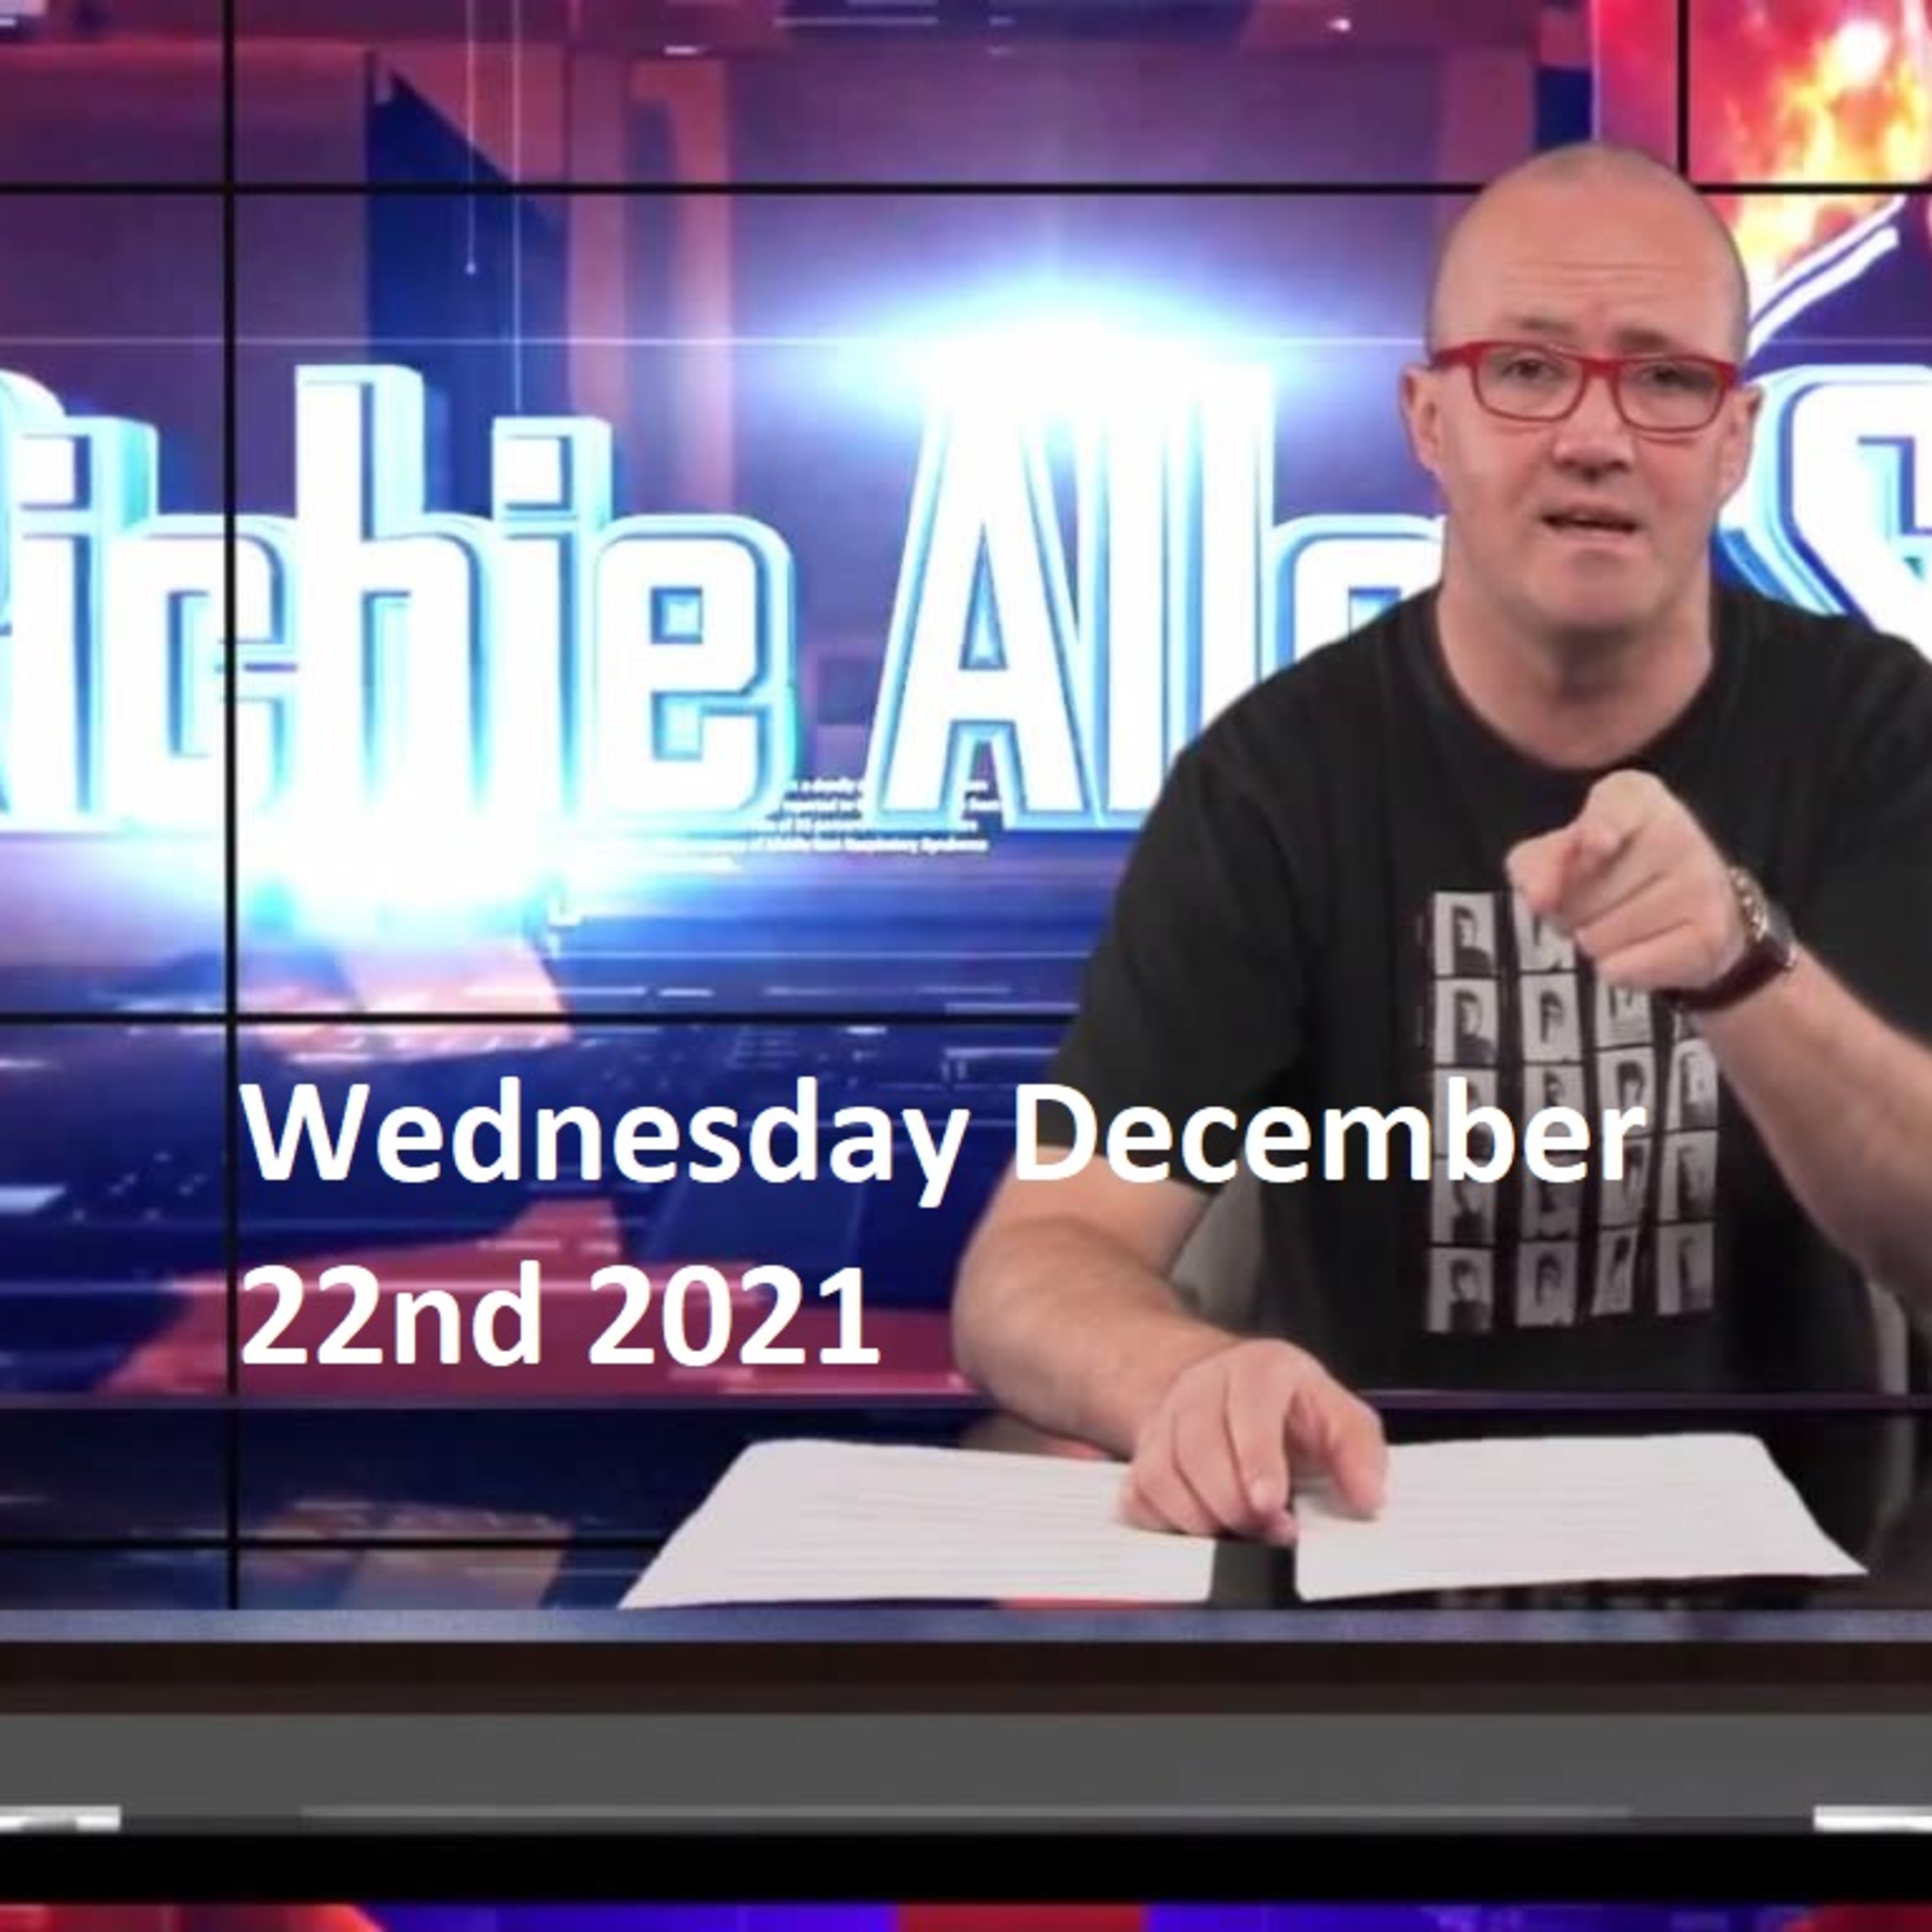 Episode 1384: The Richie Allen Show Wednesday December 22nd 2021